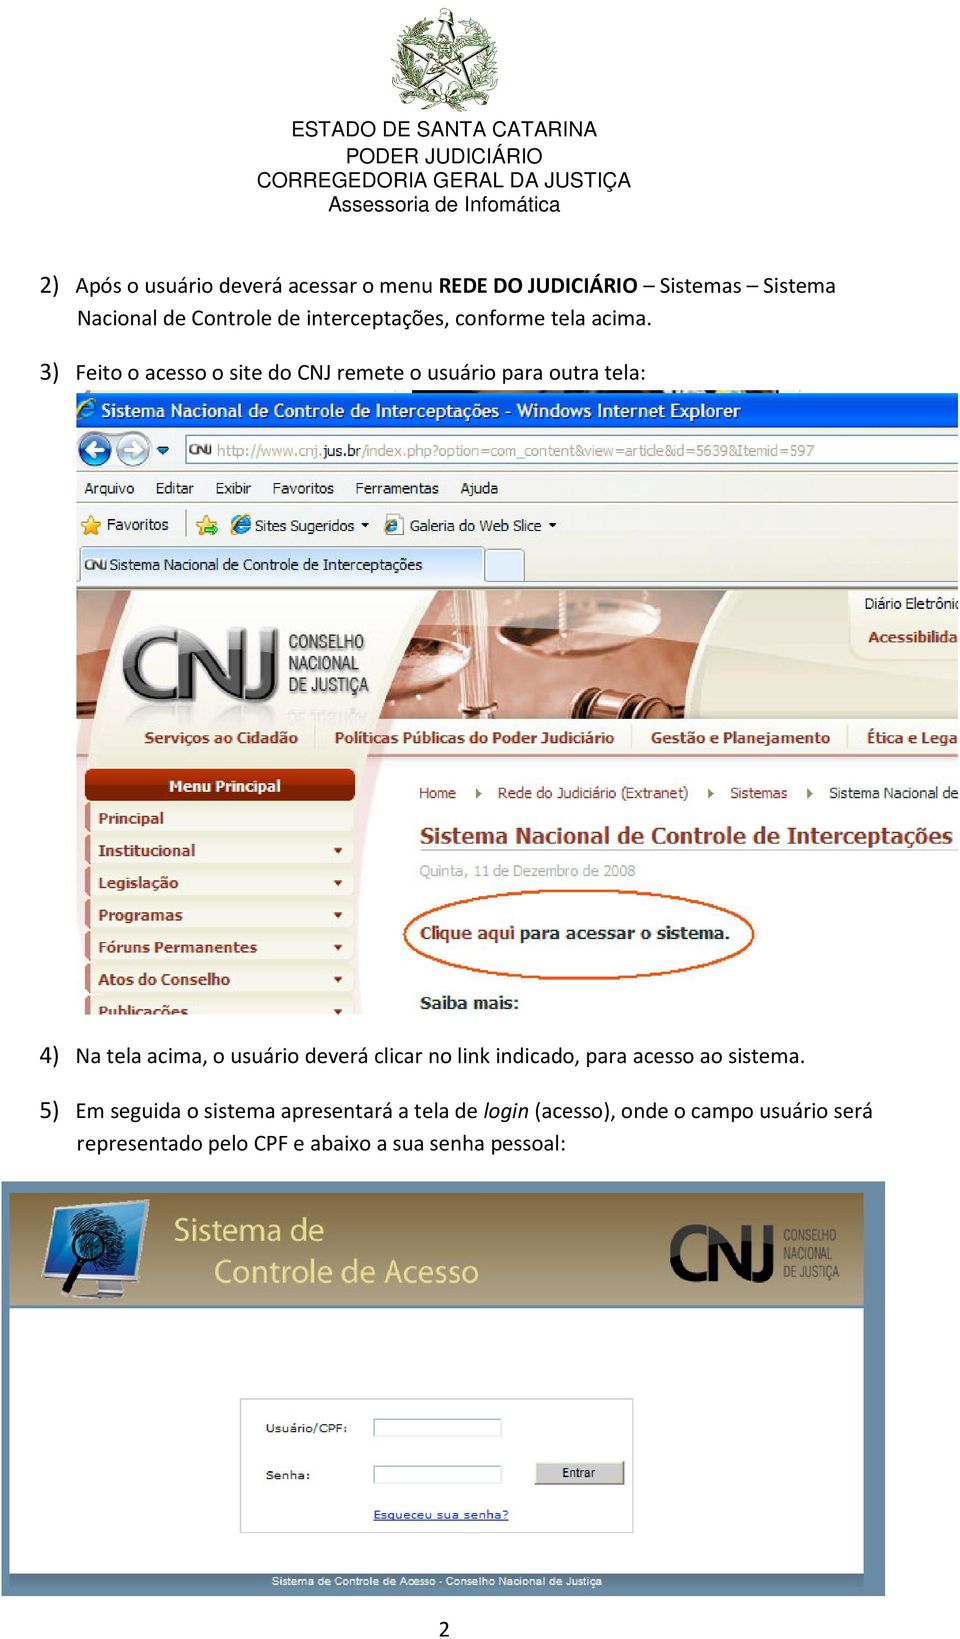 3) Feito o acesso o site do CNJ remete o usuário para outra tela: 4) Na tela acima, o usuário deverá